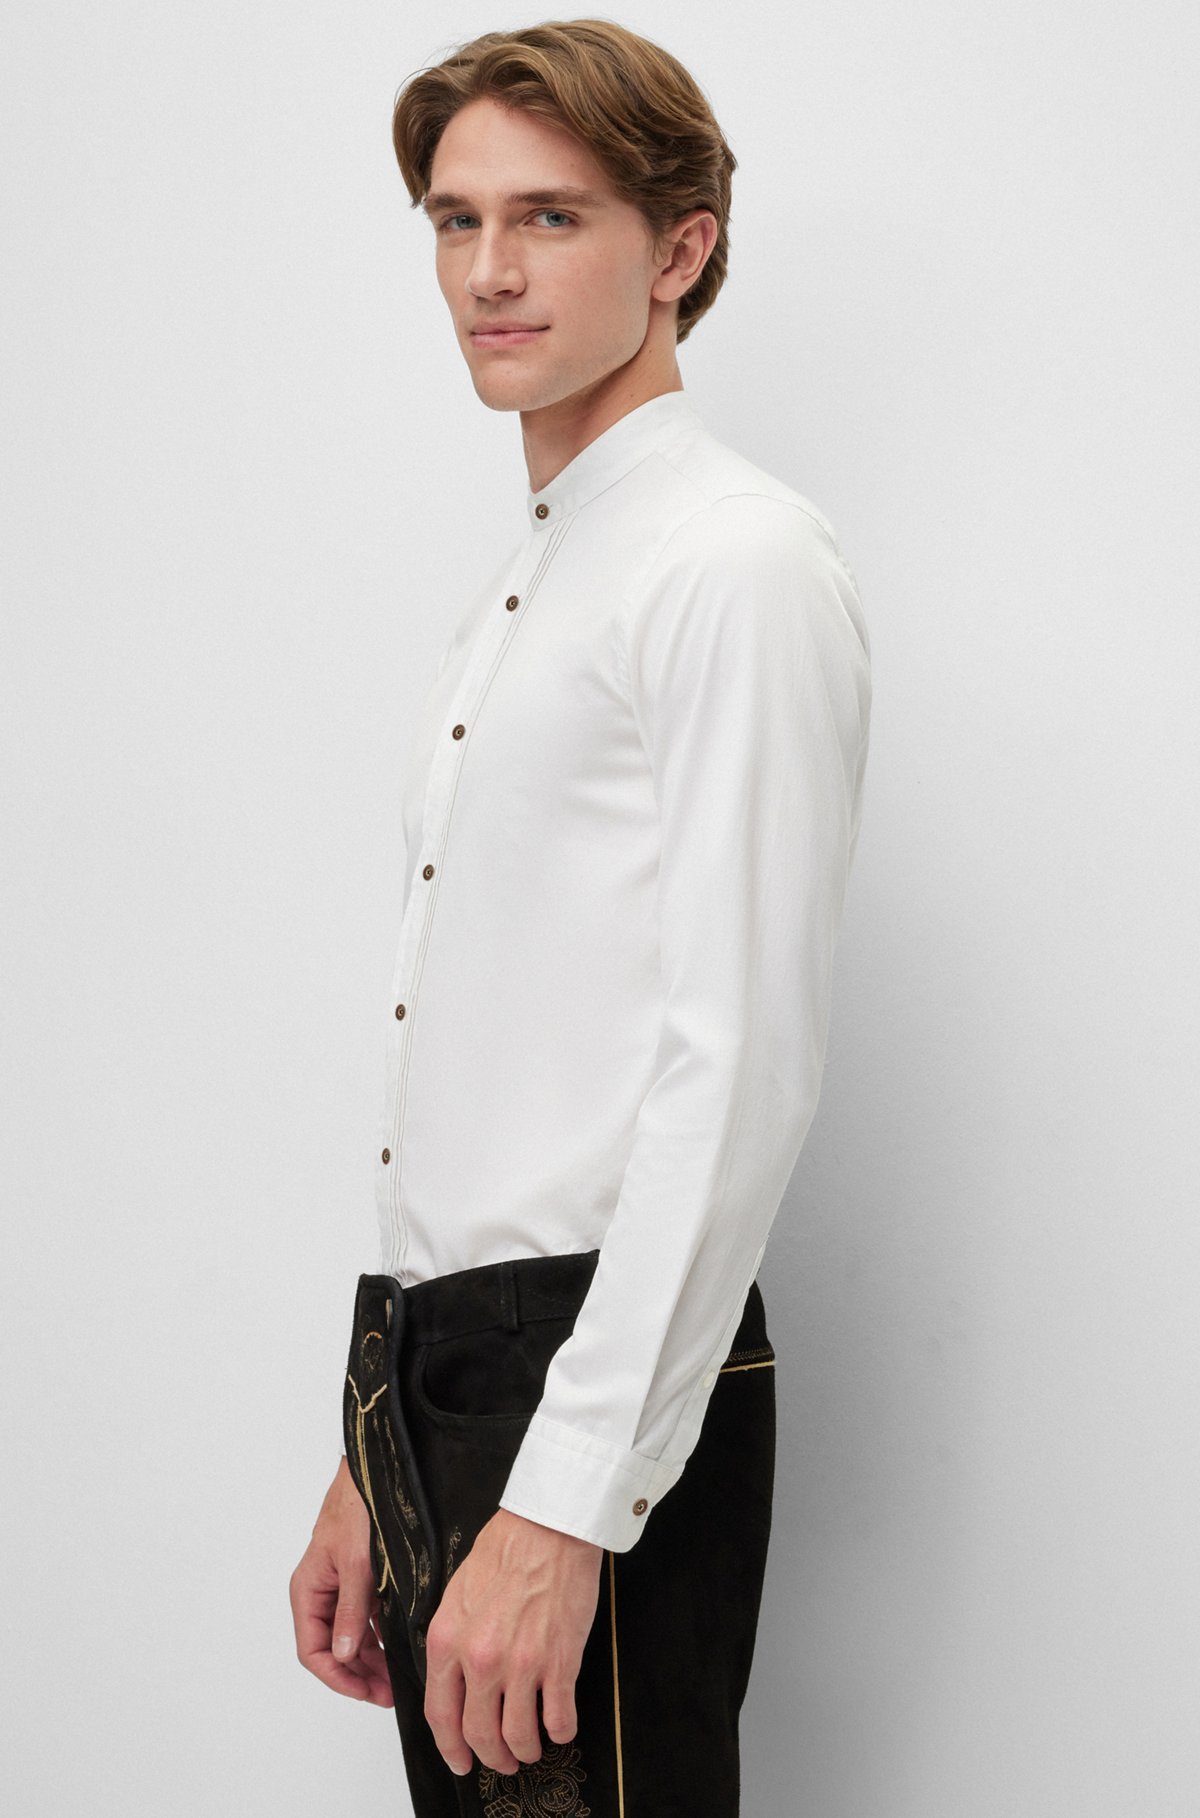 BOSS Menswear Trachten slim-fit shirt in structured cotton, White